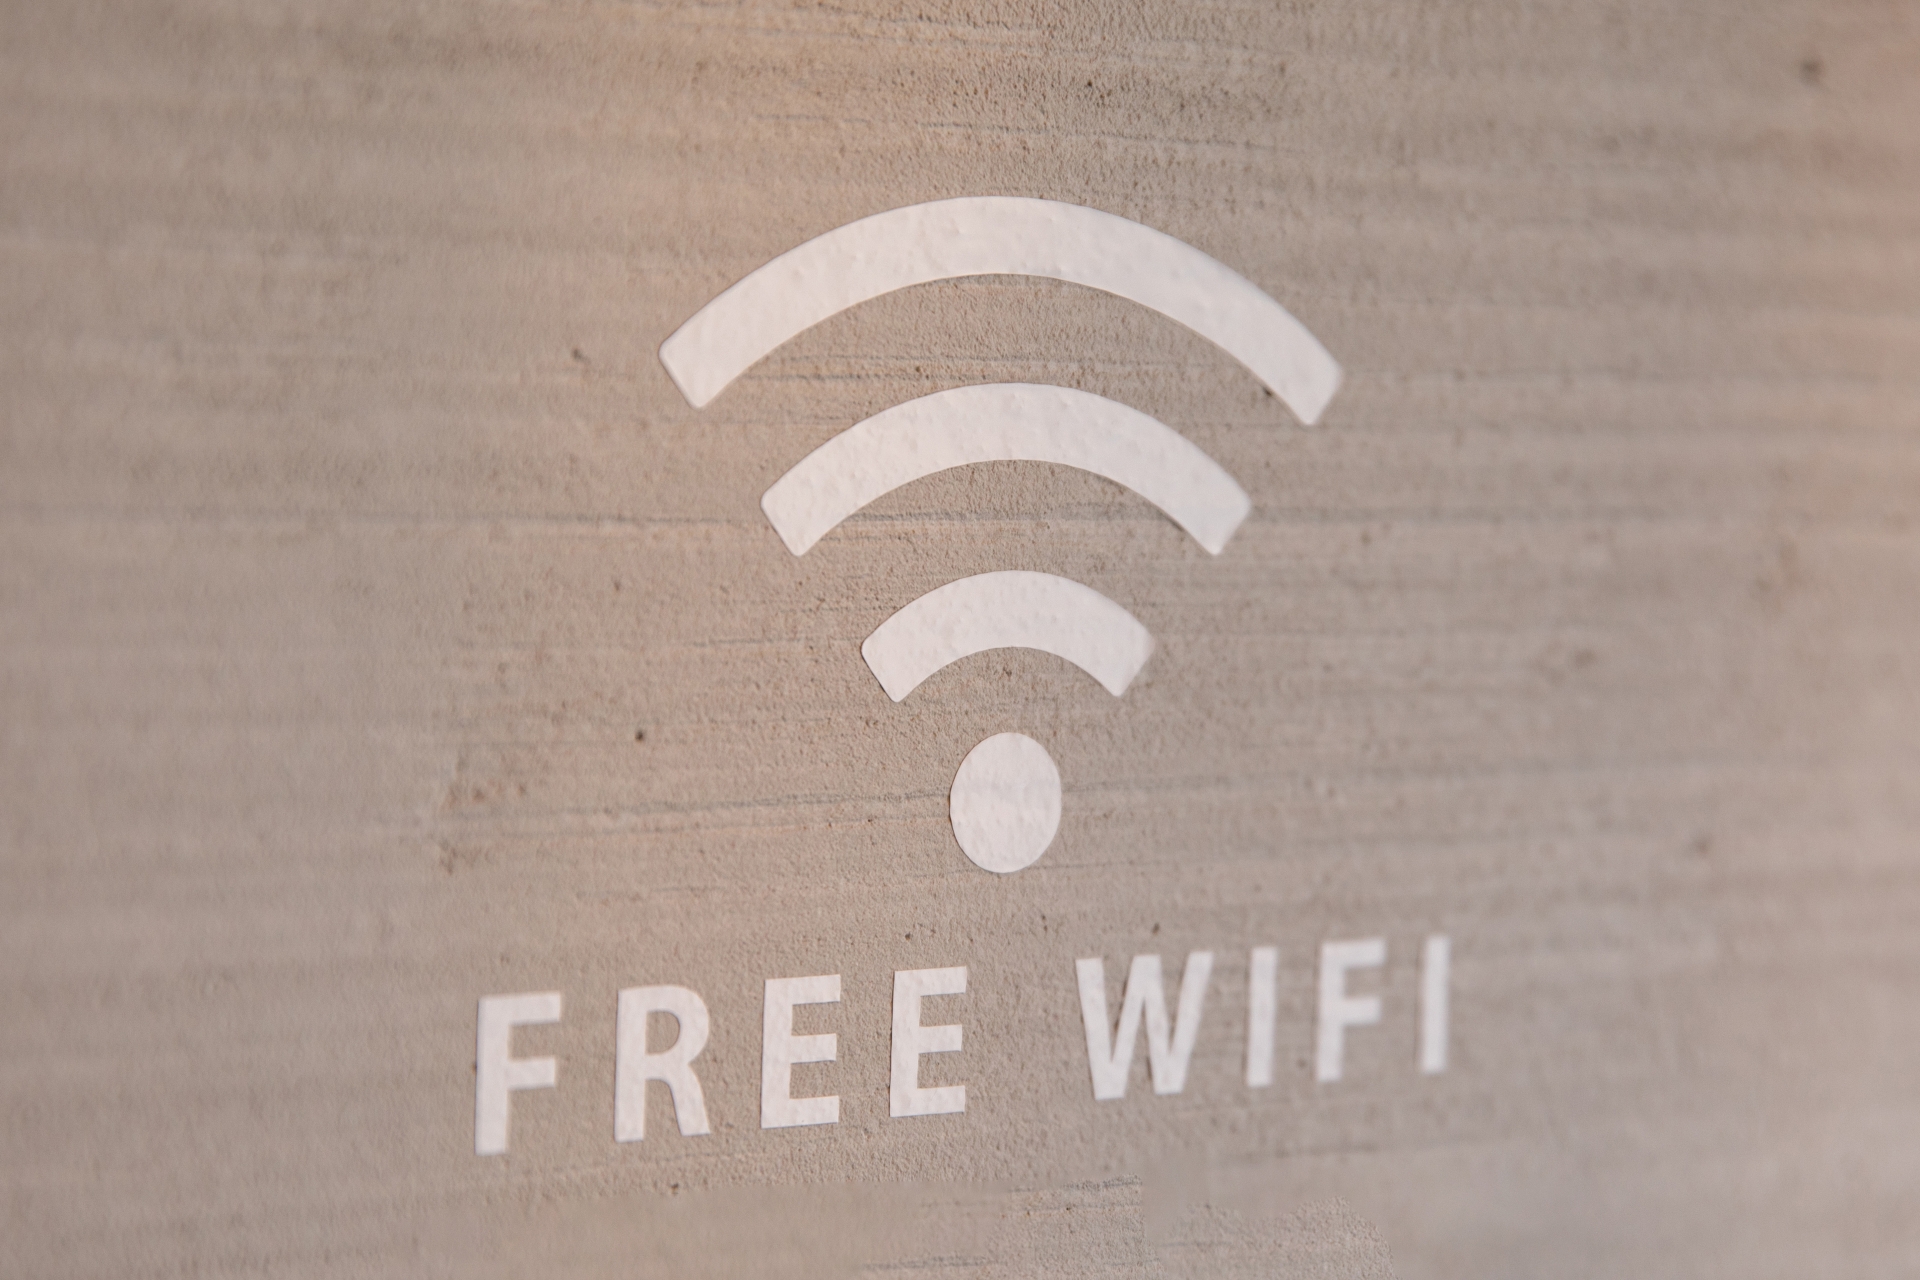 ネットワーク接続の基本！Wi-Fiの簡単な設定解説